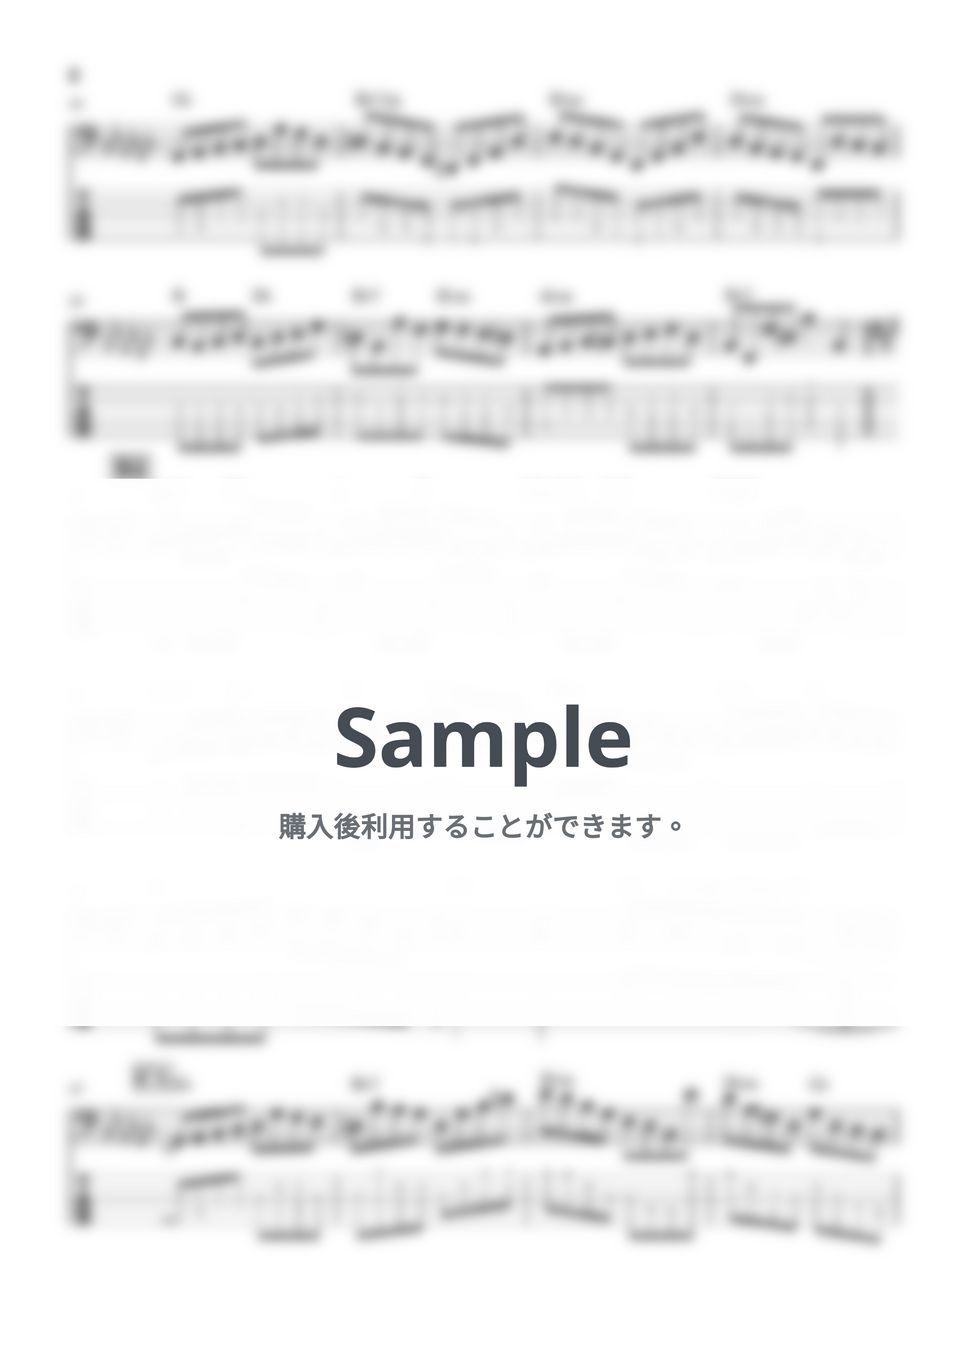 Official髭男dism - ミックスナッツ (アニメ『SPY×FAMILY』オープニングテーマ、ベース譜(五弦)) by Kodai Hojo